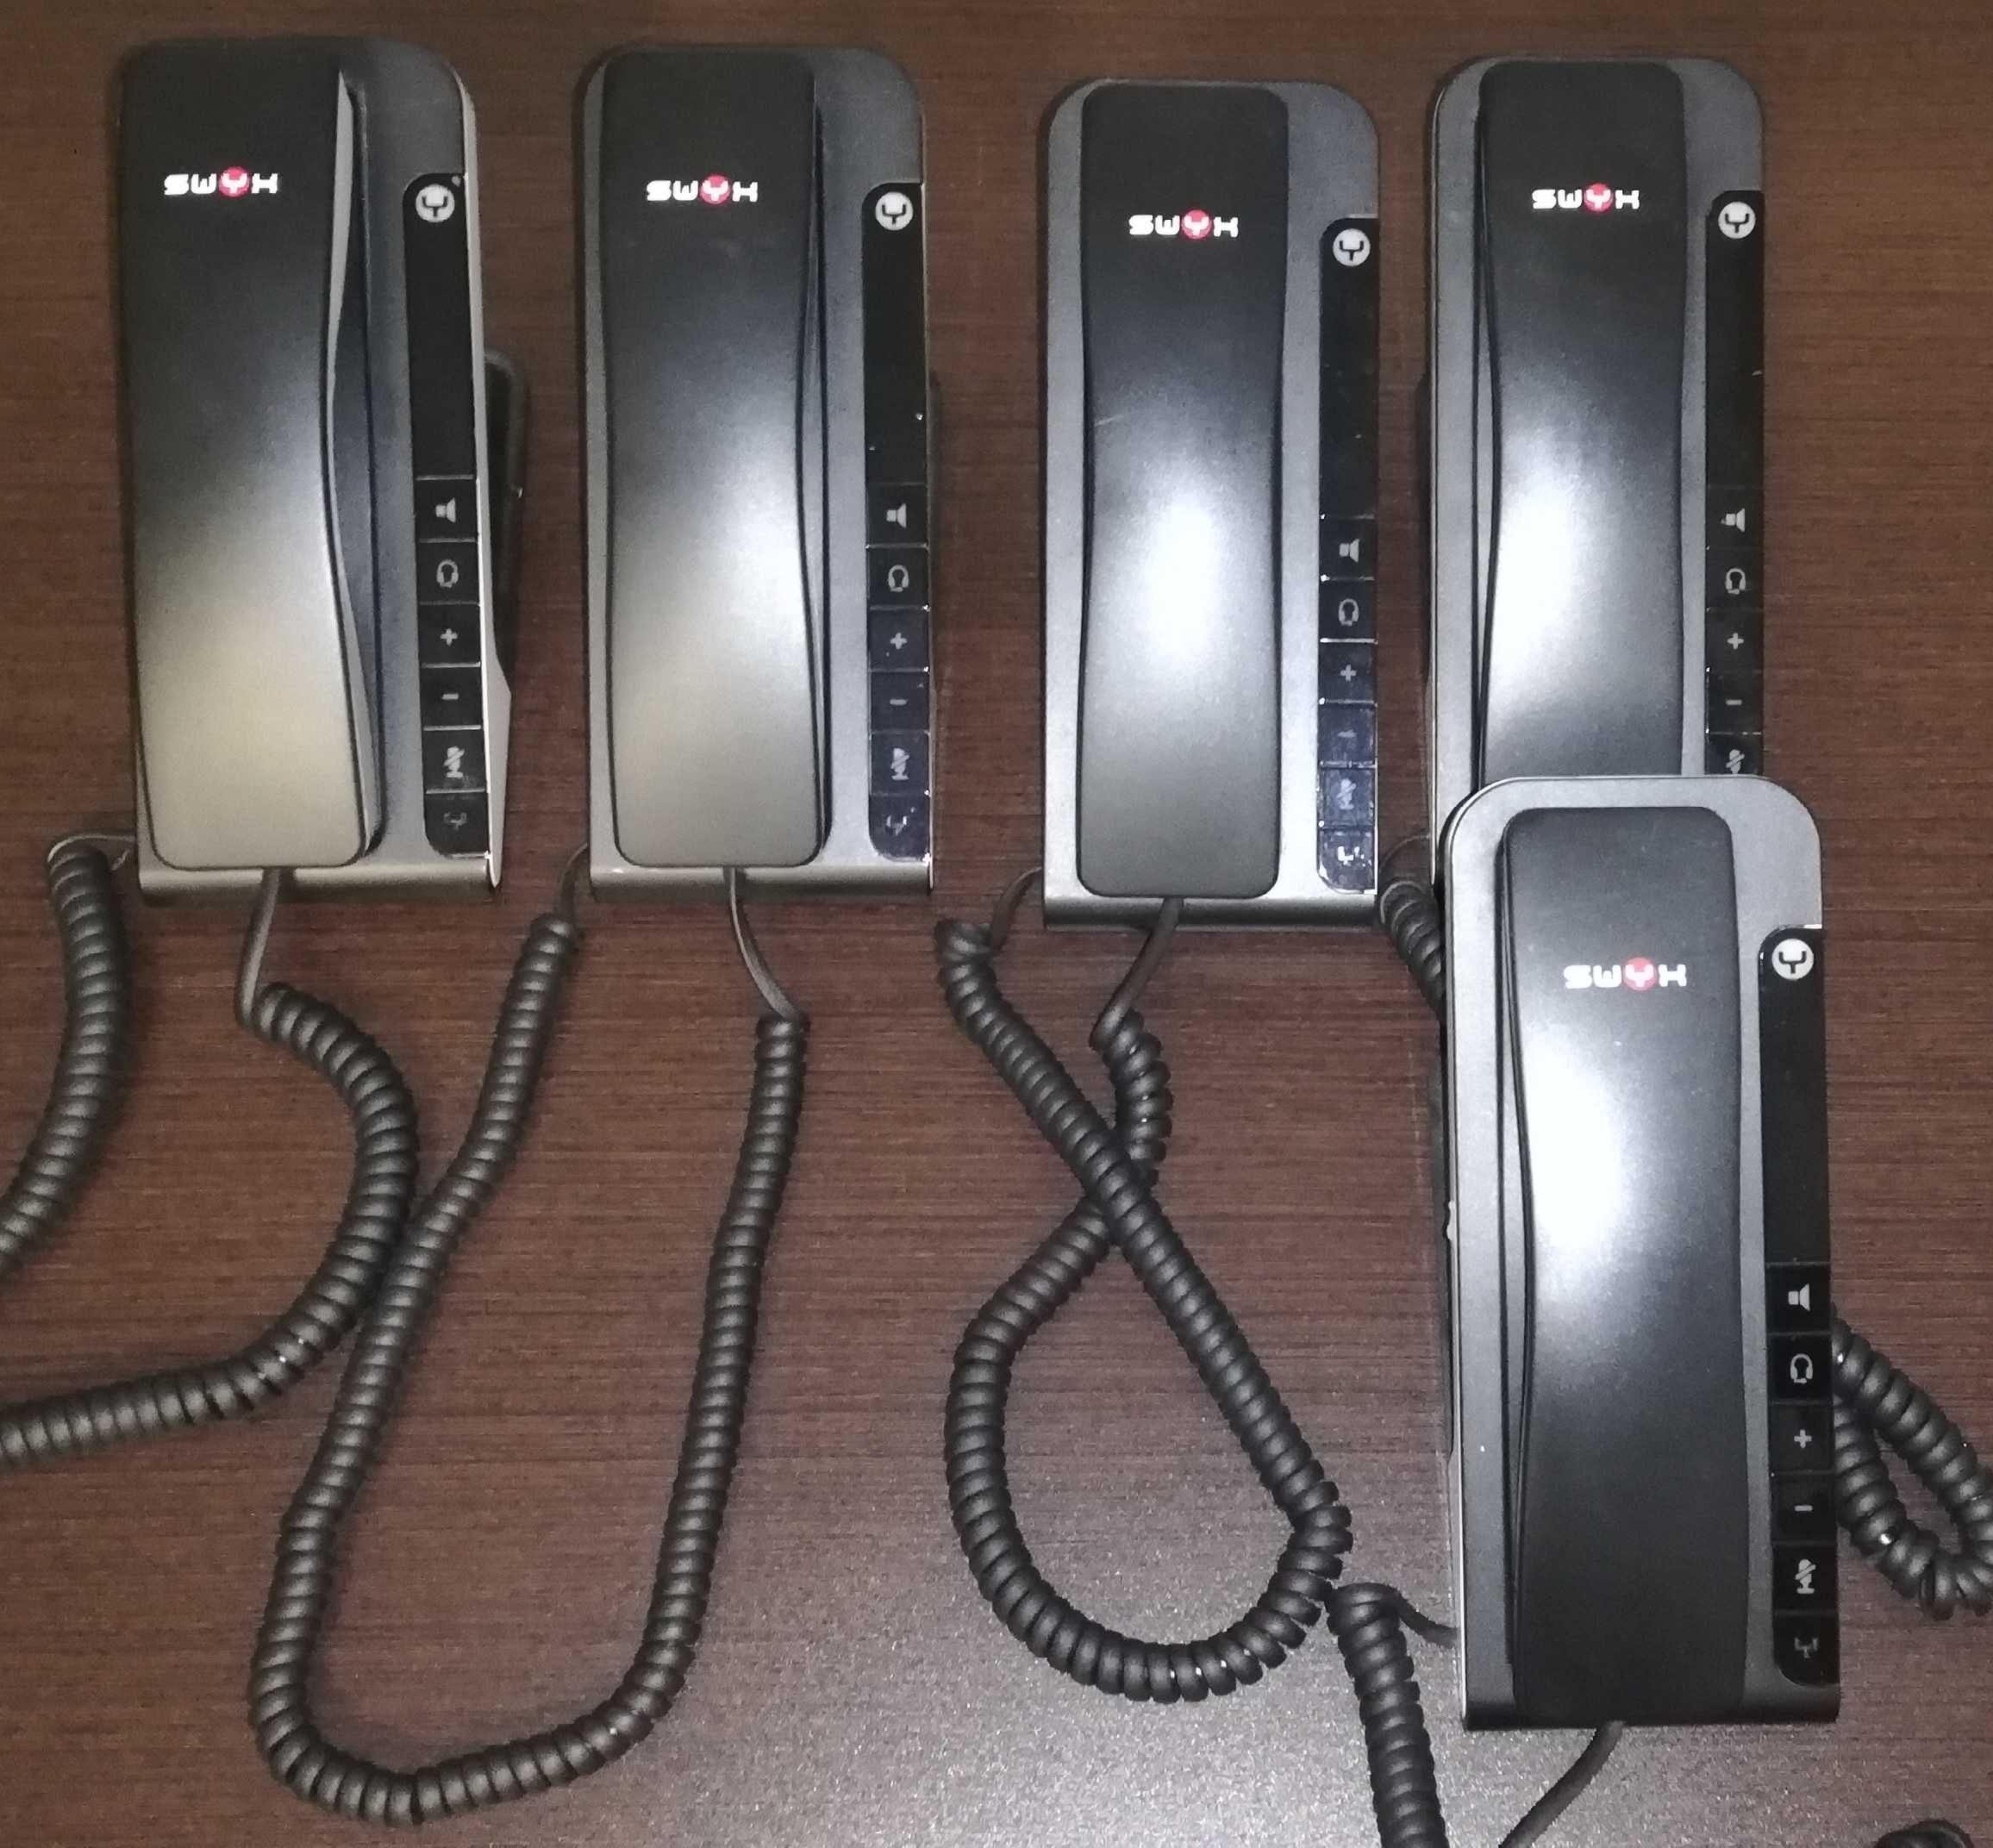 Telefones de rede, USB e analógicos